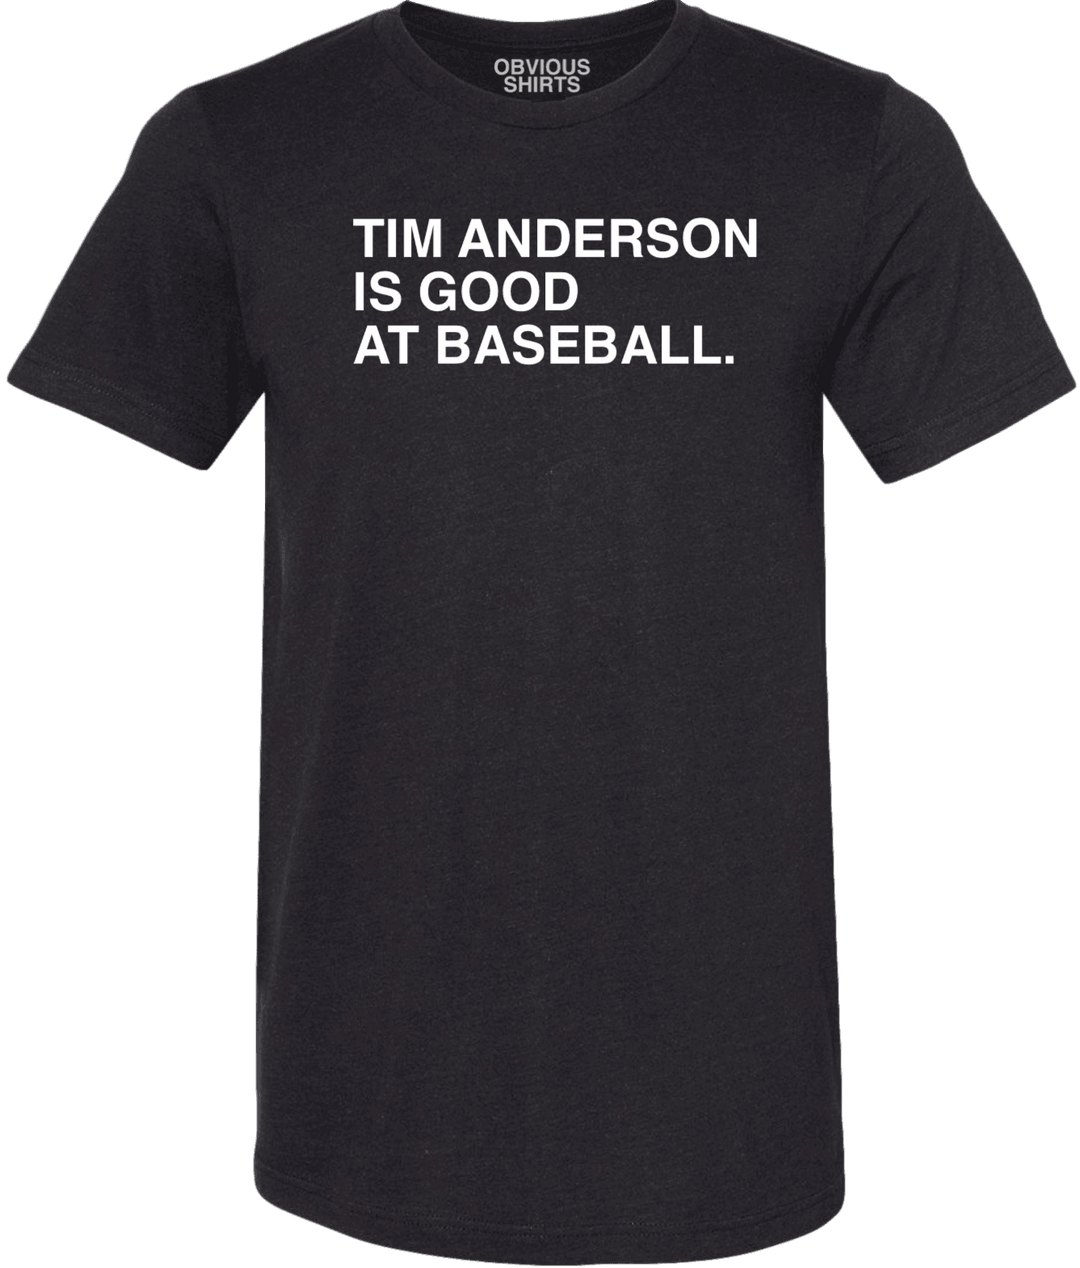 TIM ANDERSON IS GOOD AT BASEBALL. - OBVIOUS SHIRTS.